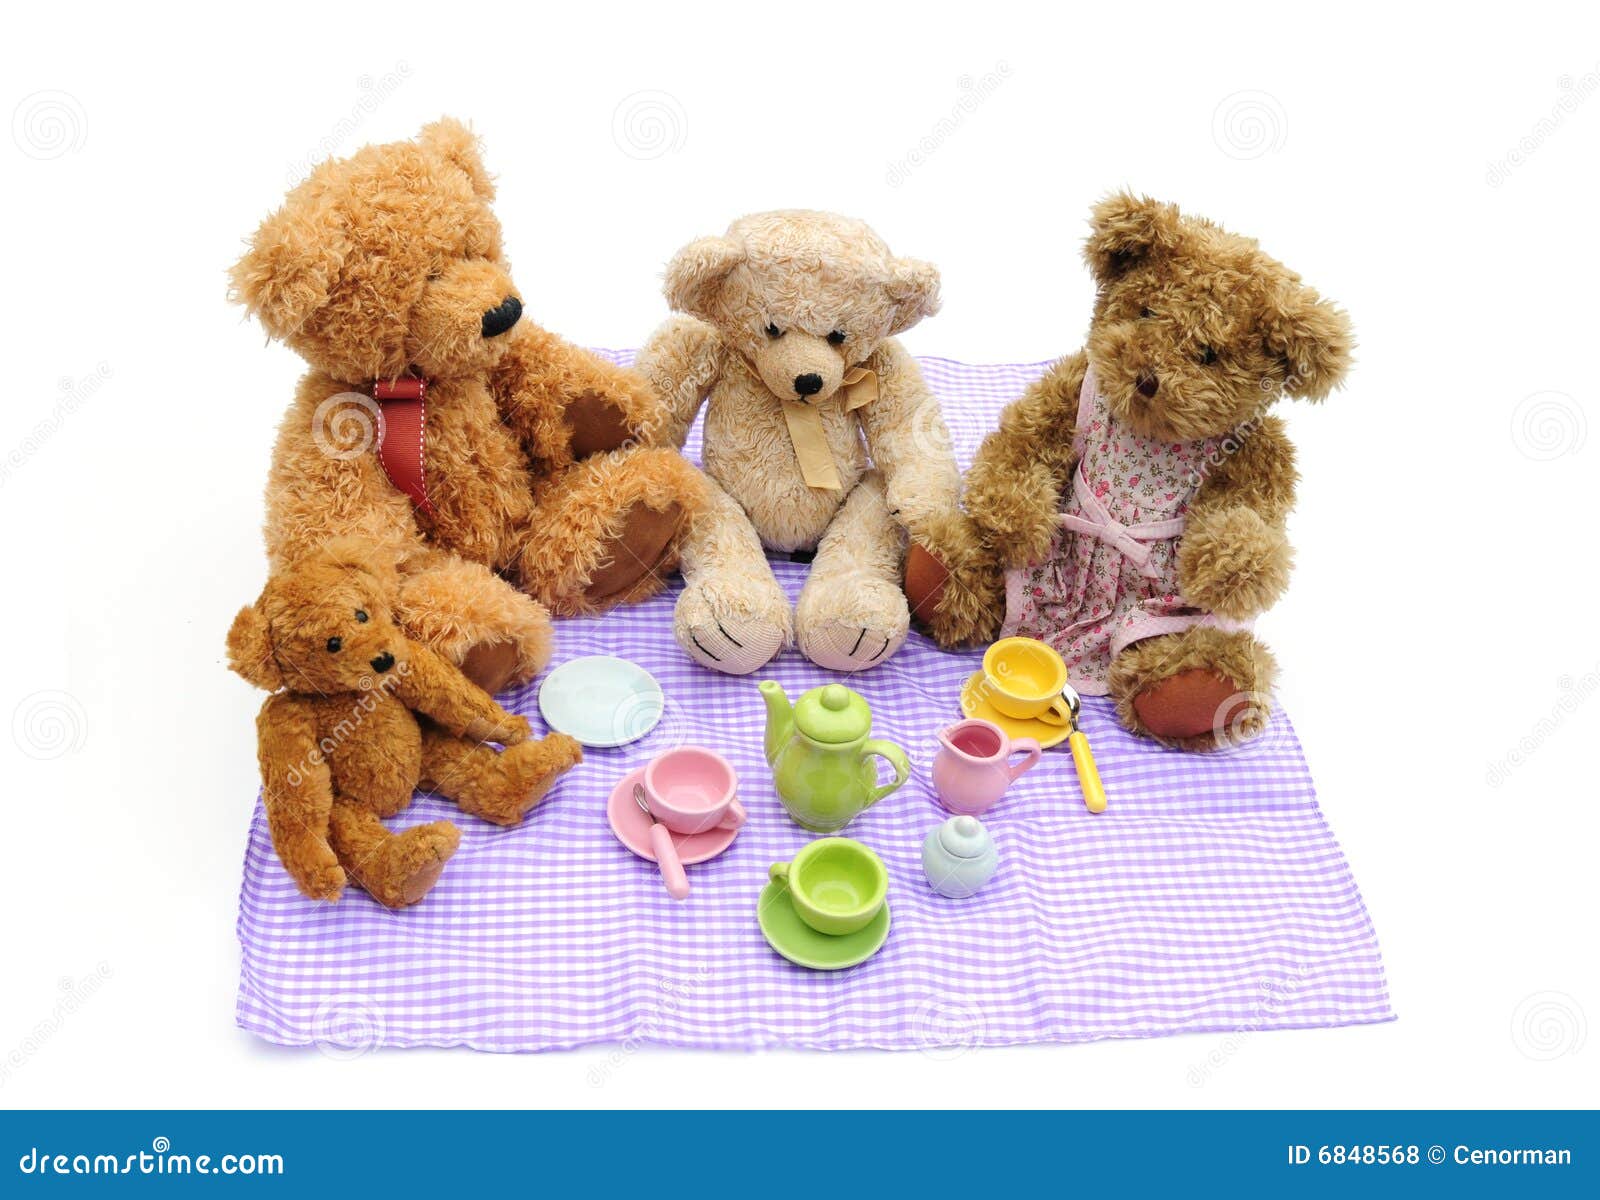 teddy bear tea party clip art - photo #31